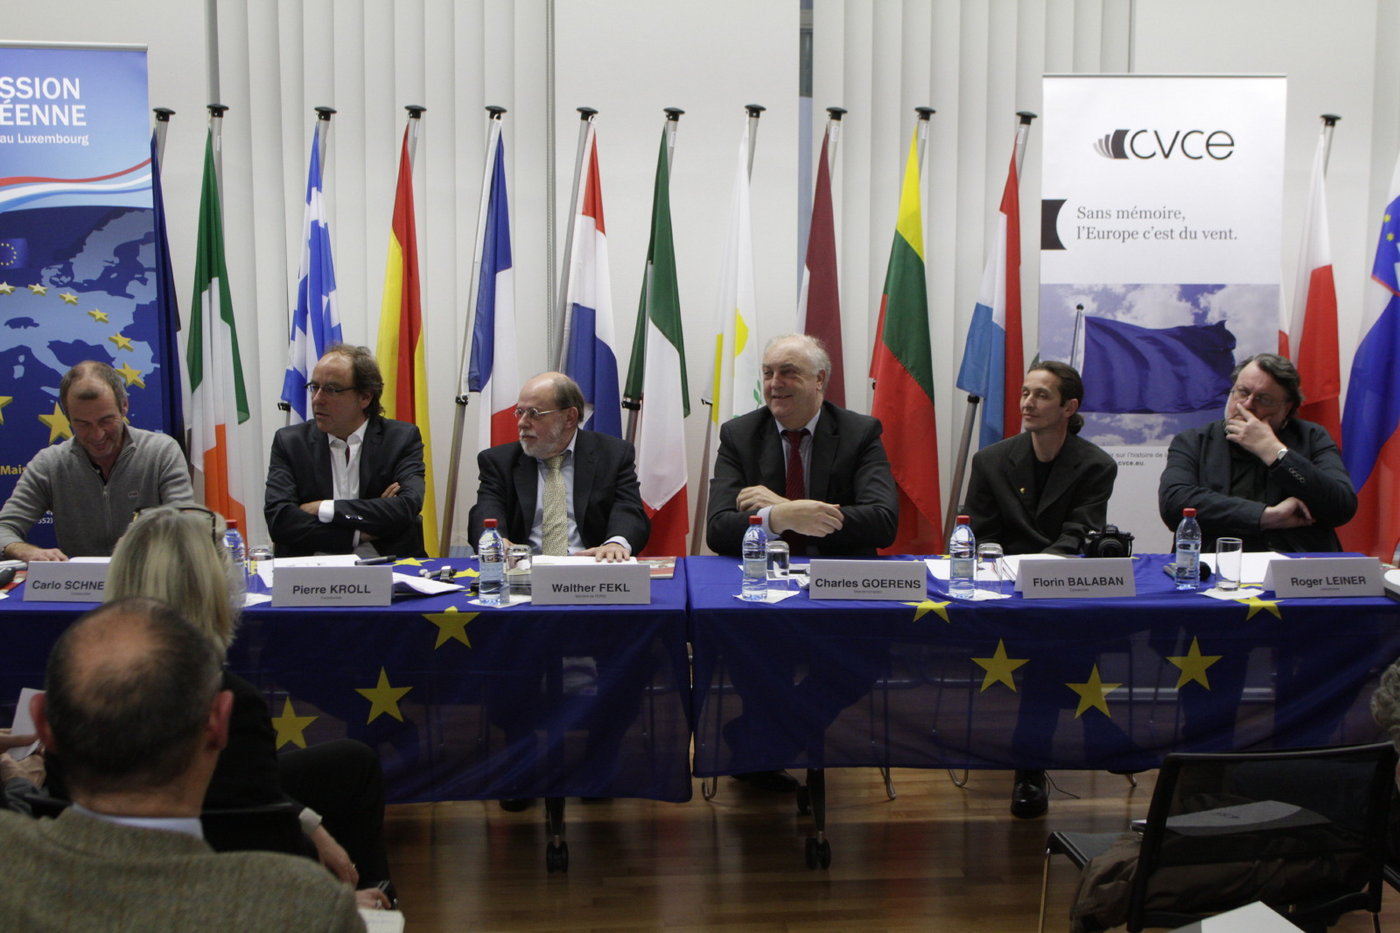 Les intervenants de la table ronde "Les caricaturistes et l’Europe: le pouvoir de l’image"